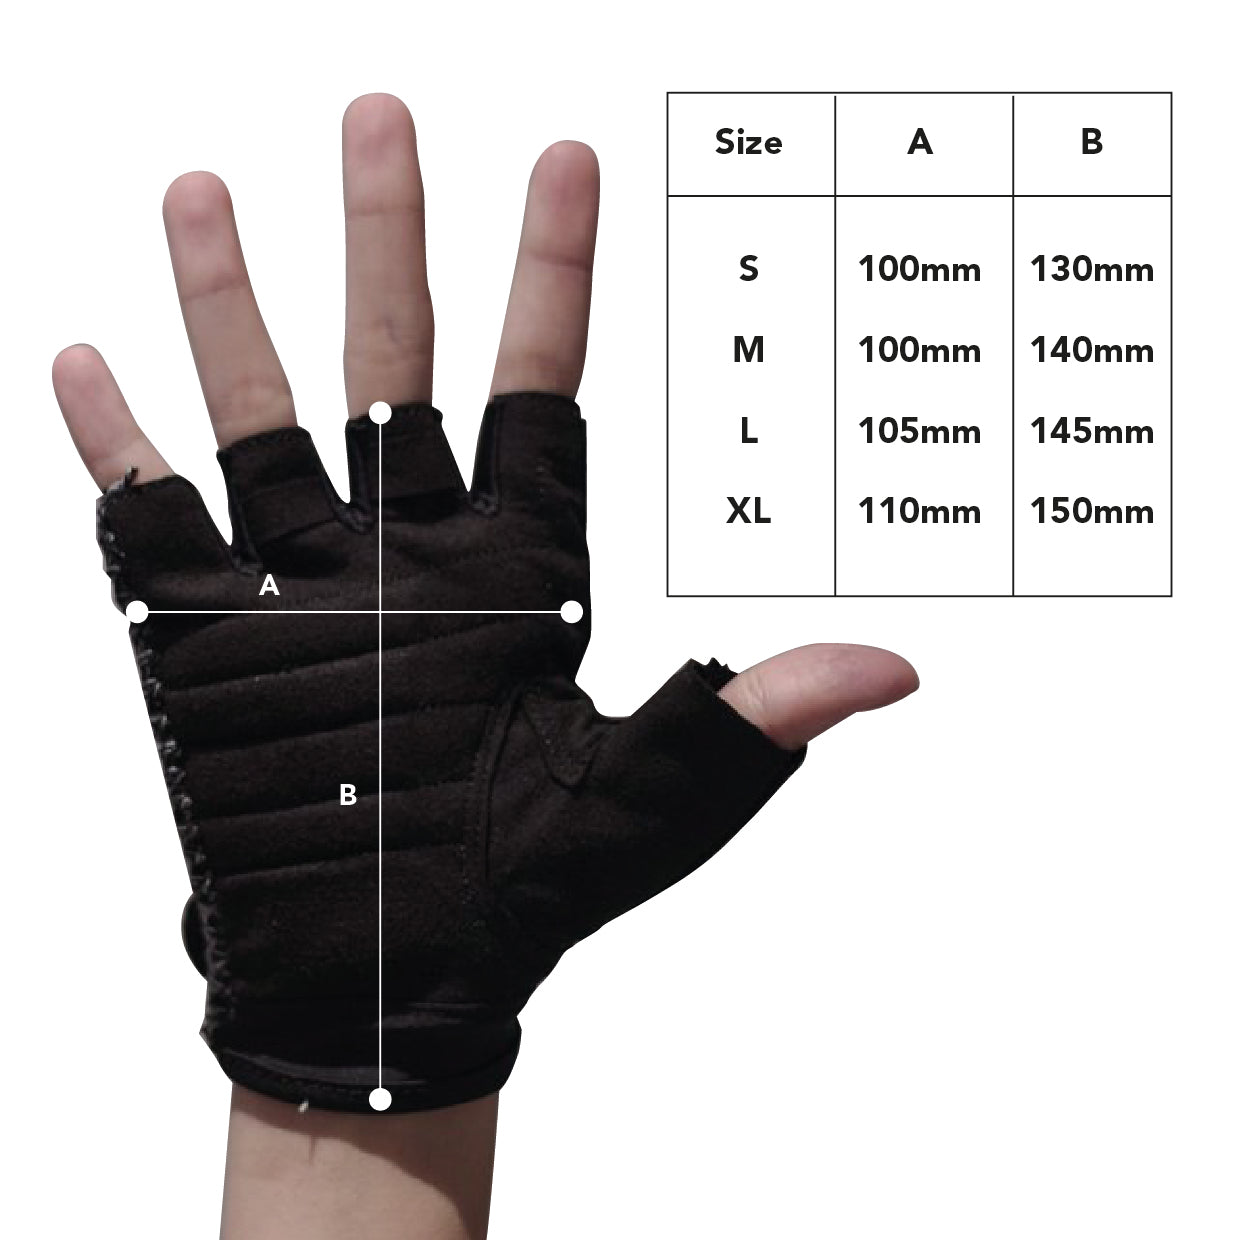 BLB Cycling Glove - All Black